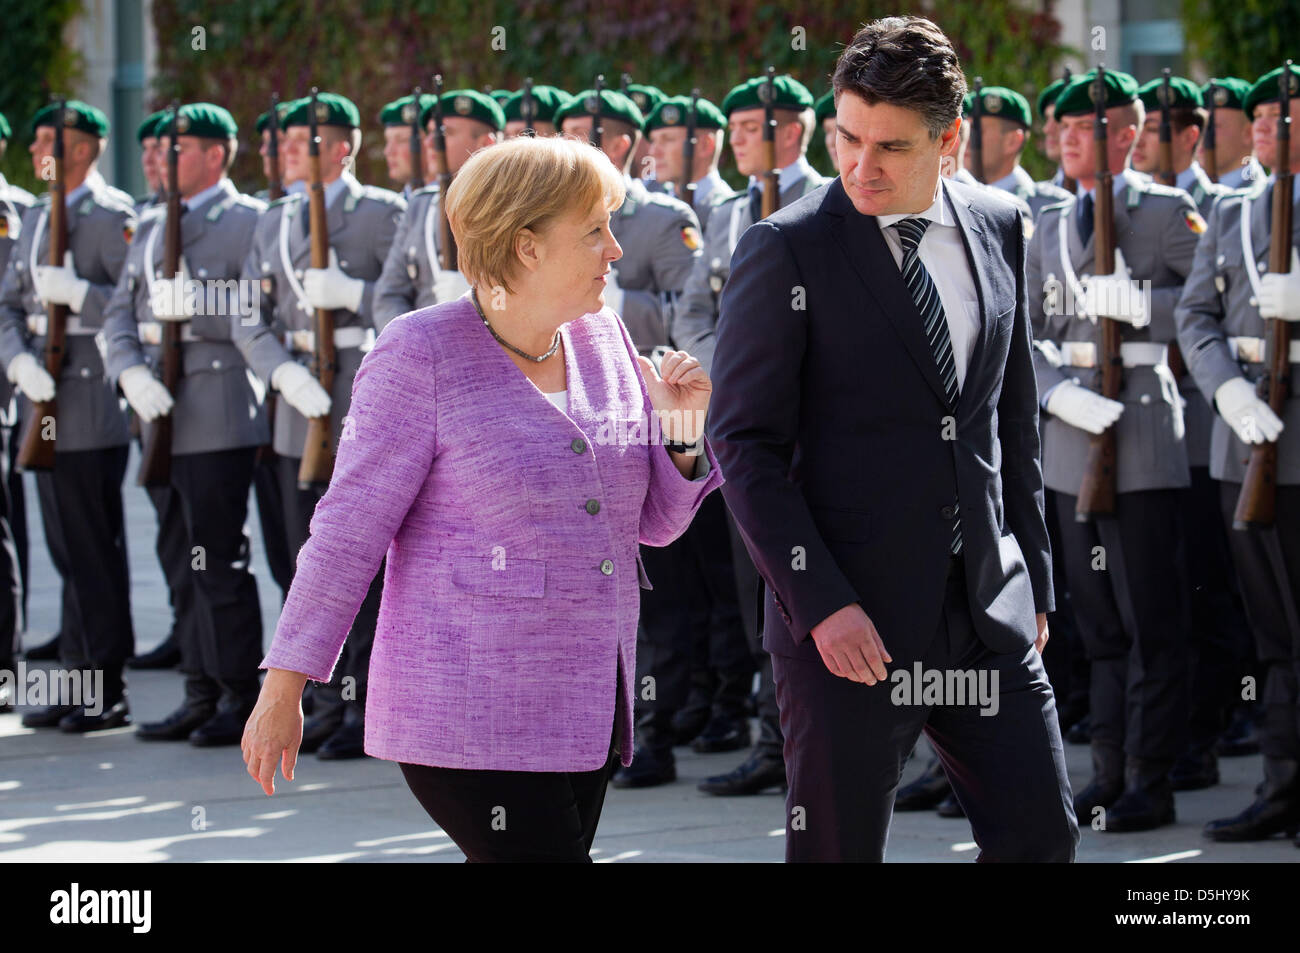 La chancelière allemande, Angela Merkel (CDU) reçoit le Premier ministre croate Zoran Milanovic avec honneurs militaires en face de la chancellerie fédérale à Berlin, Allemagne, le 19 septembre 2012. Rencontre Merkel Milanovic pour des entretiens bilatéraux. Photo : MICHAEL KAPPELER Banque D'Images